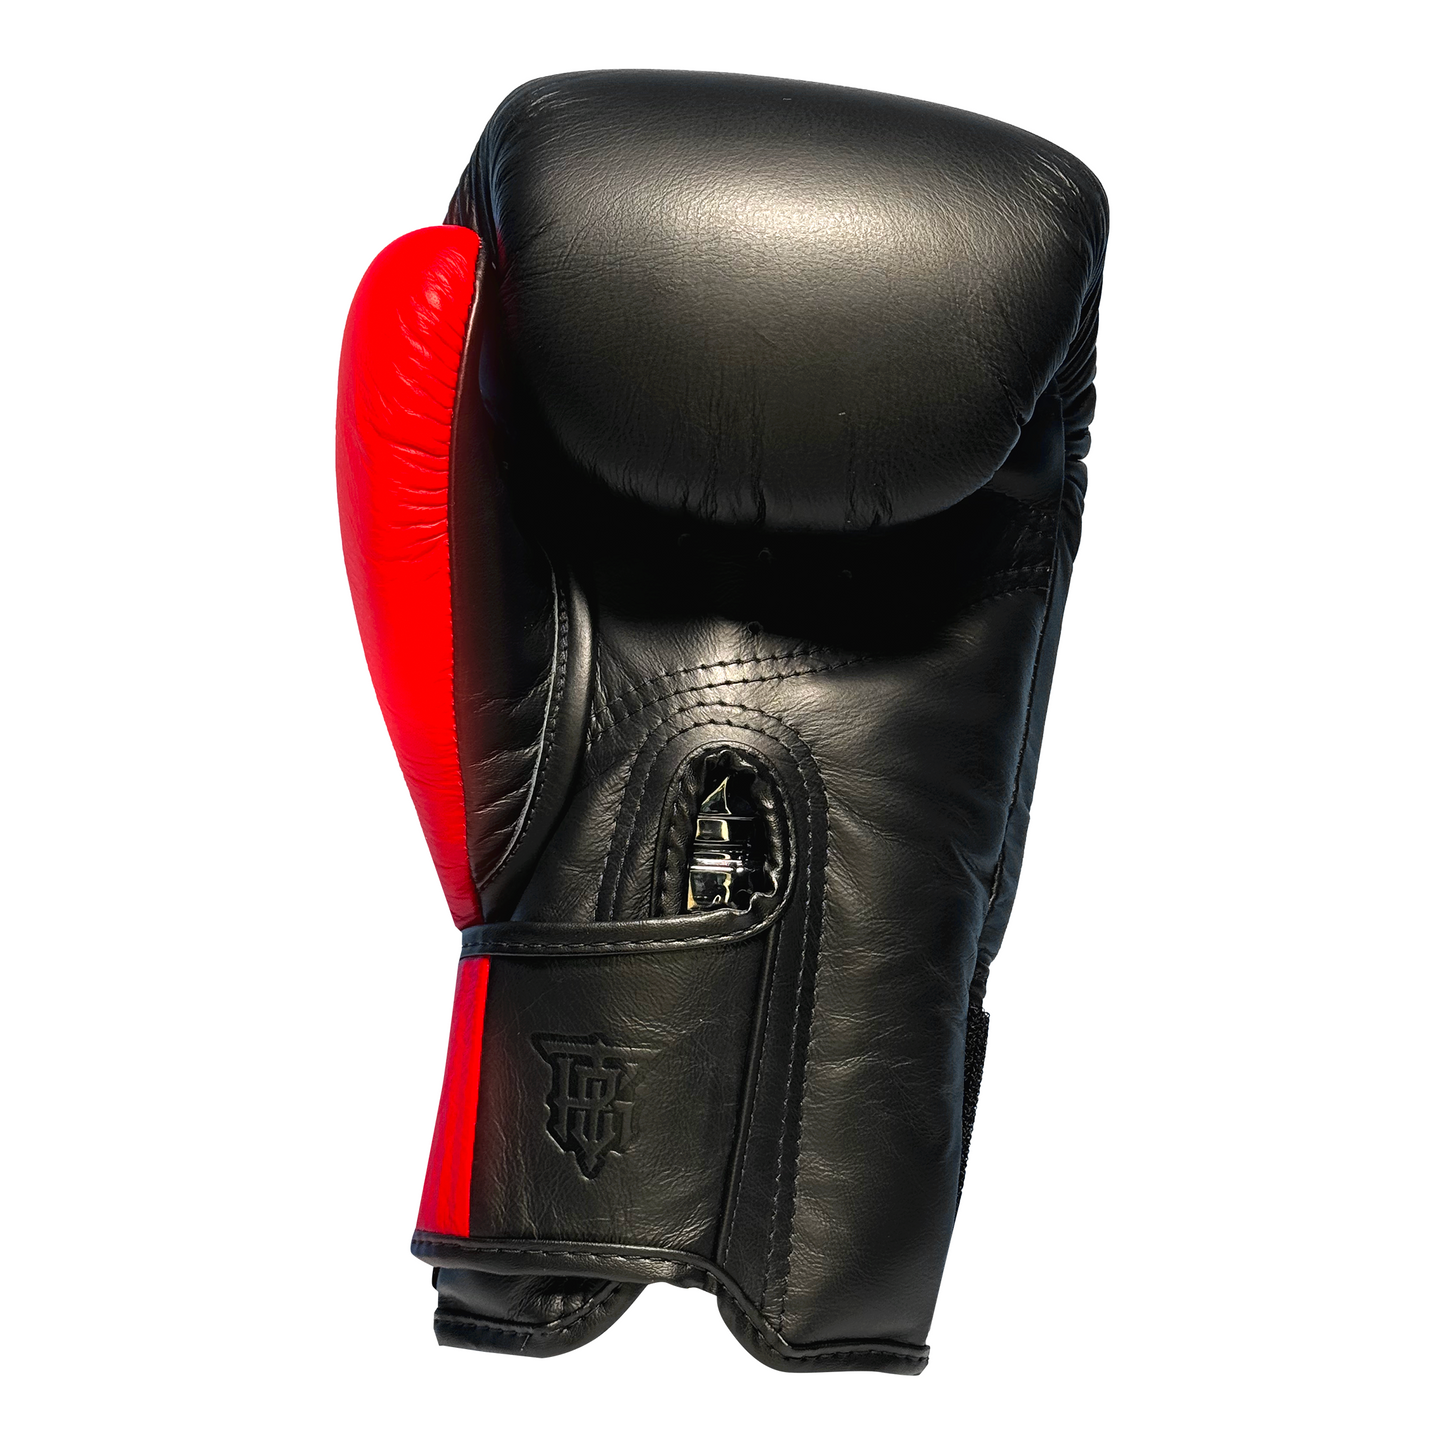 Top King Boxhandschuhe "Power" schwarz/rot